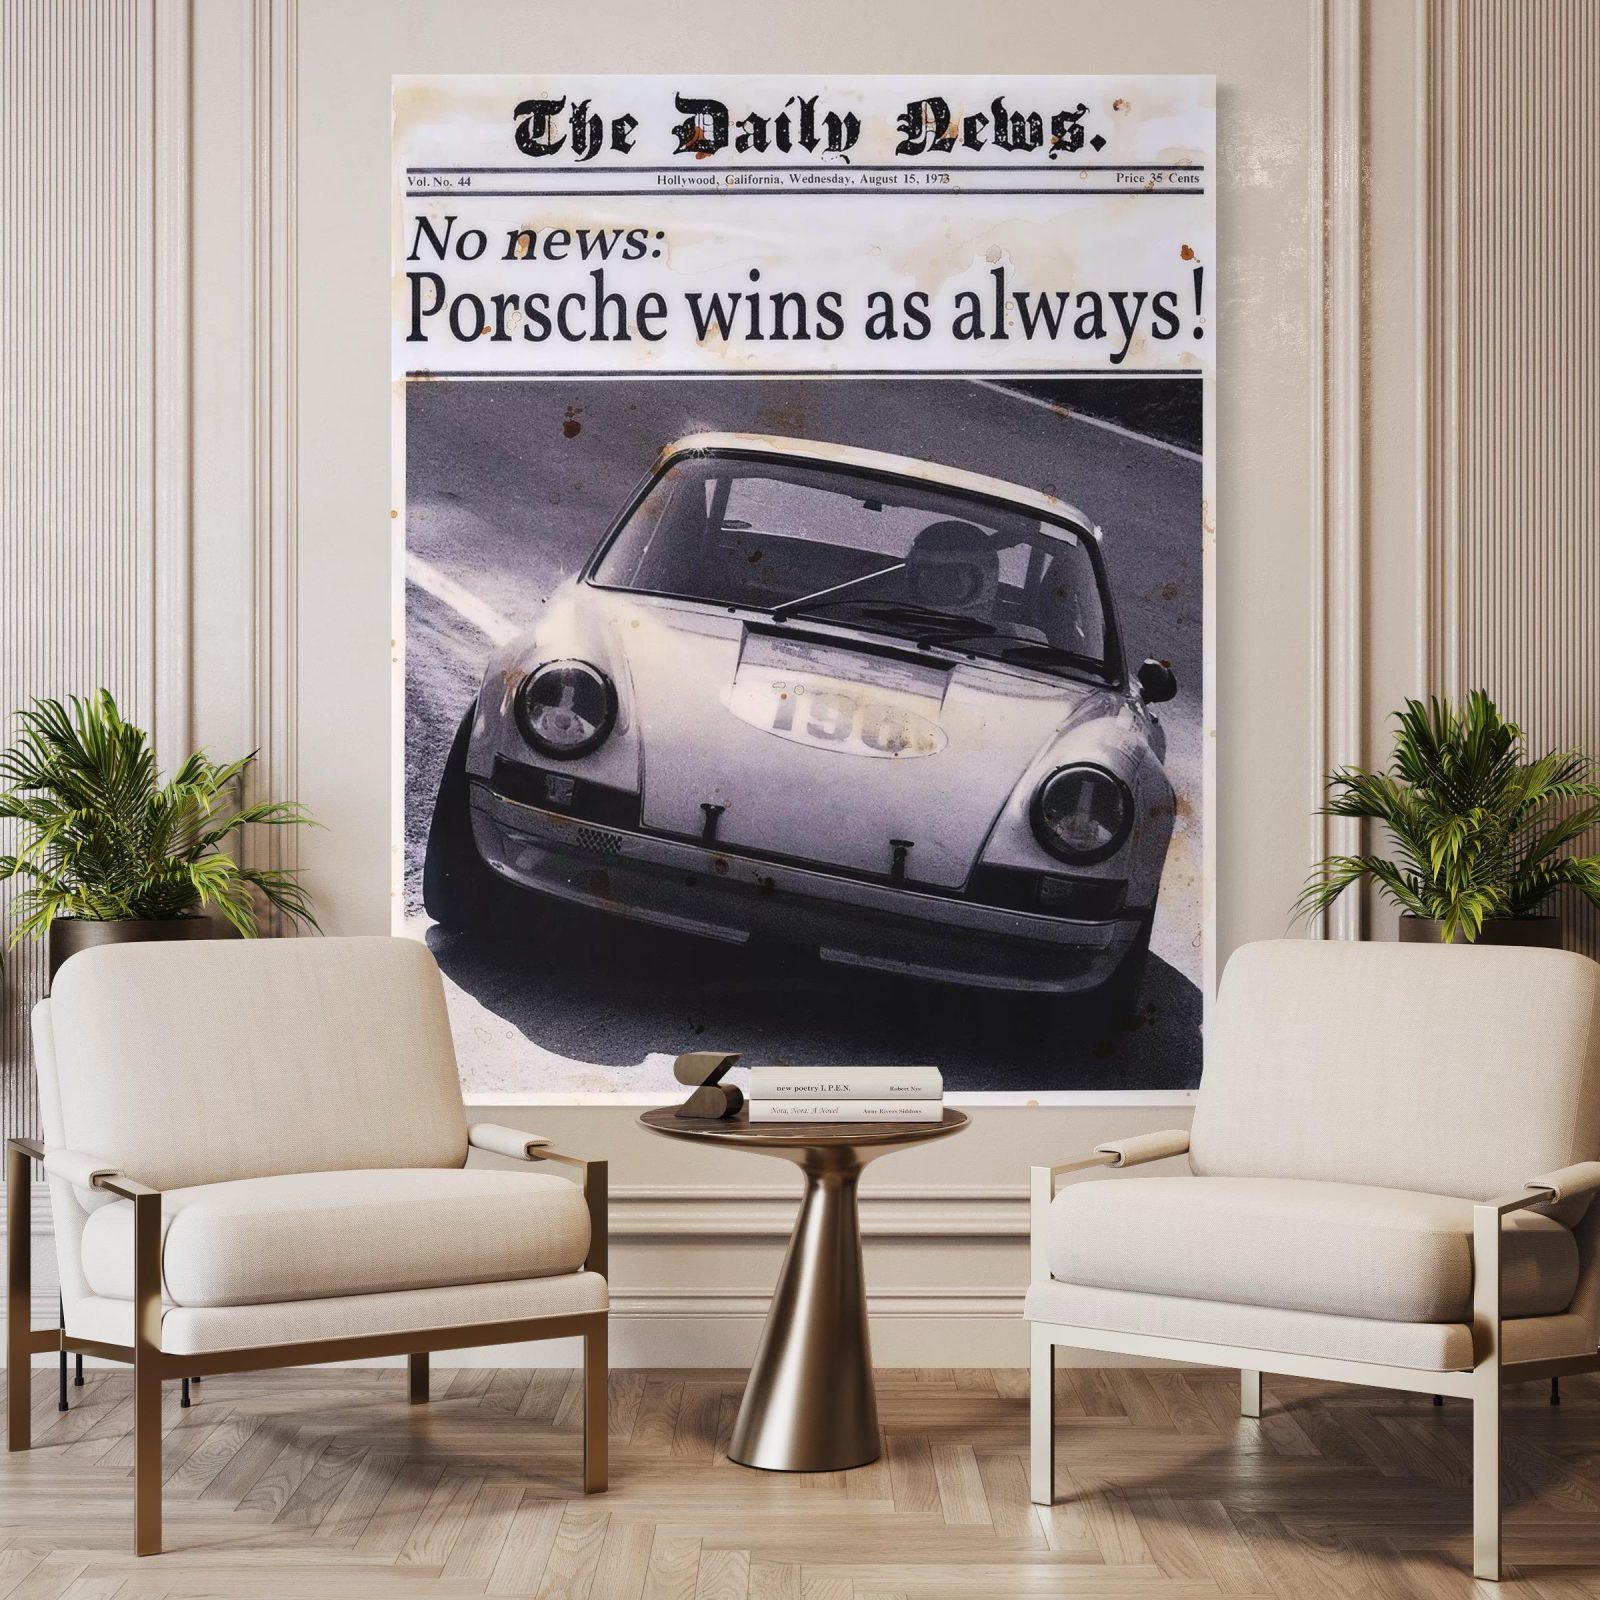 Porsche wins - Döring, Jörg - k-DPOWI-EDIT13